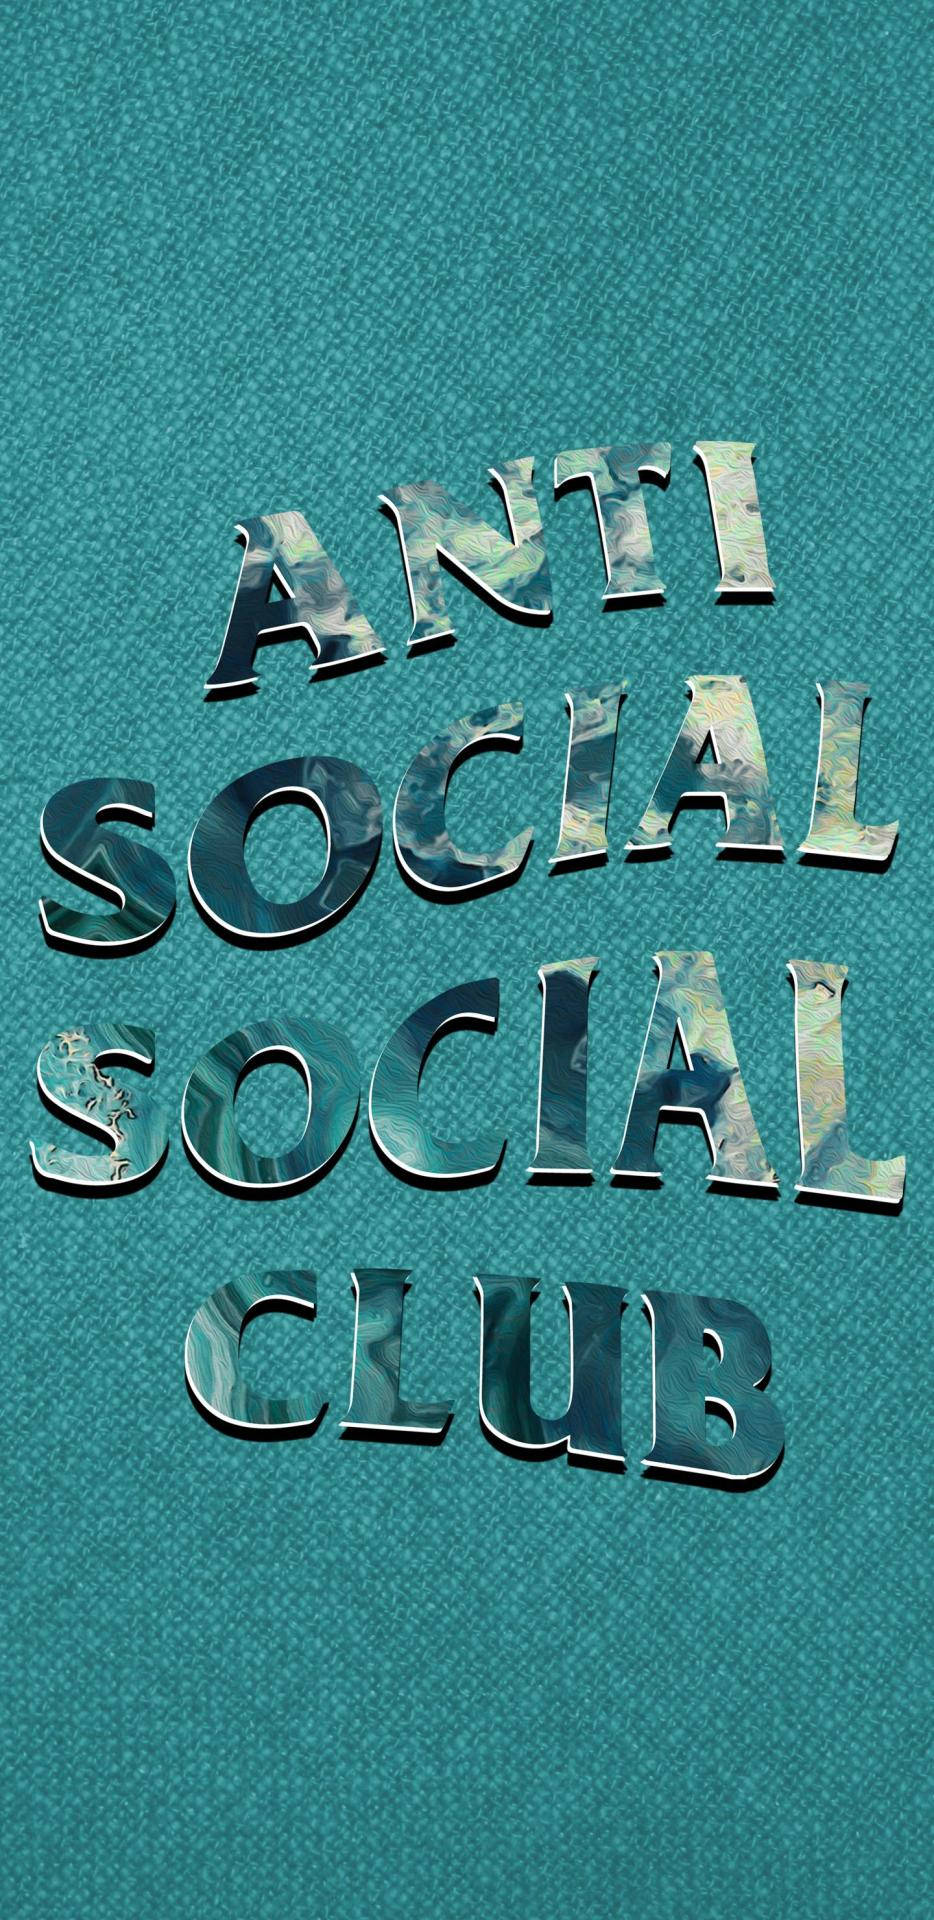 Antisocial Social Club Skimmerblått Med Glittrande Effekt. Wallpaper